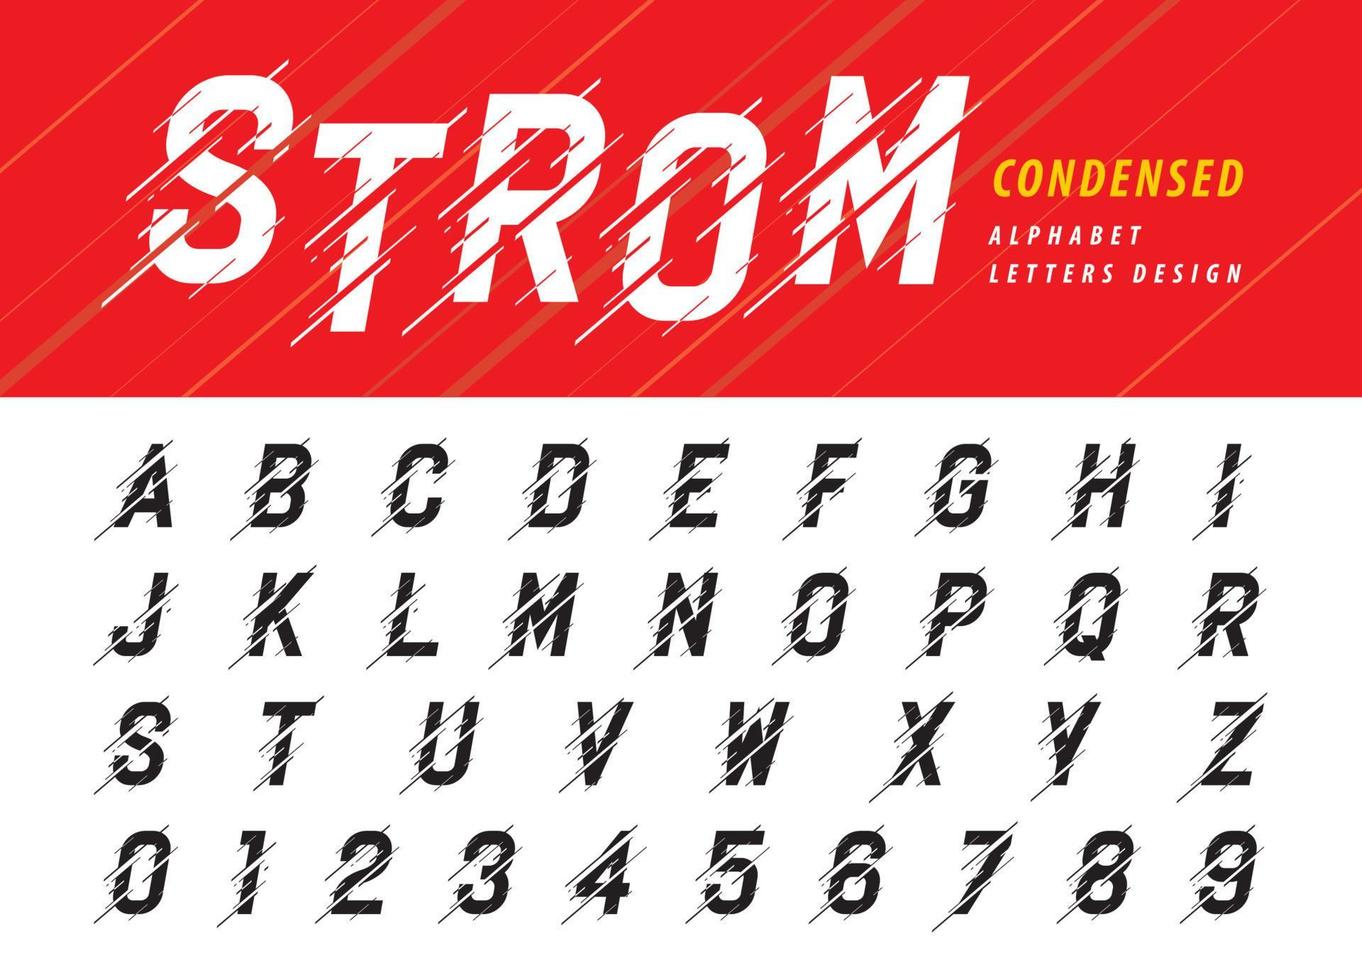 Moving Storm Letter Condensed Italic Styleized Fonts, Glitch Modern Alphabet Buchstaben und Zahlen vektor